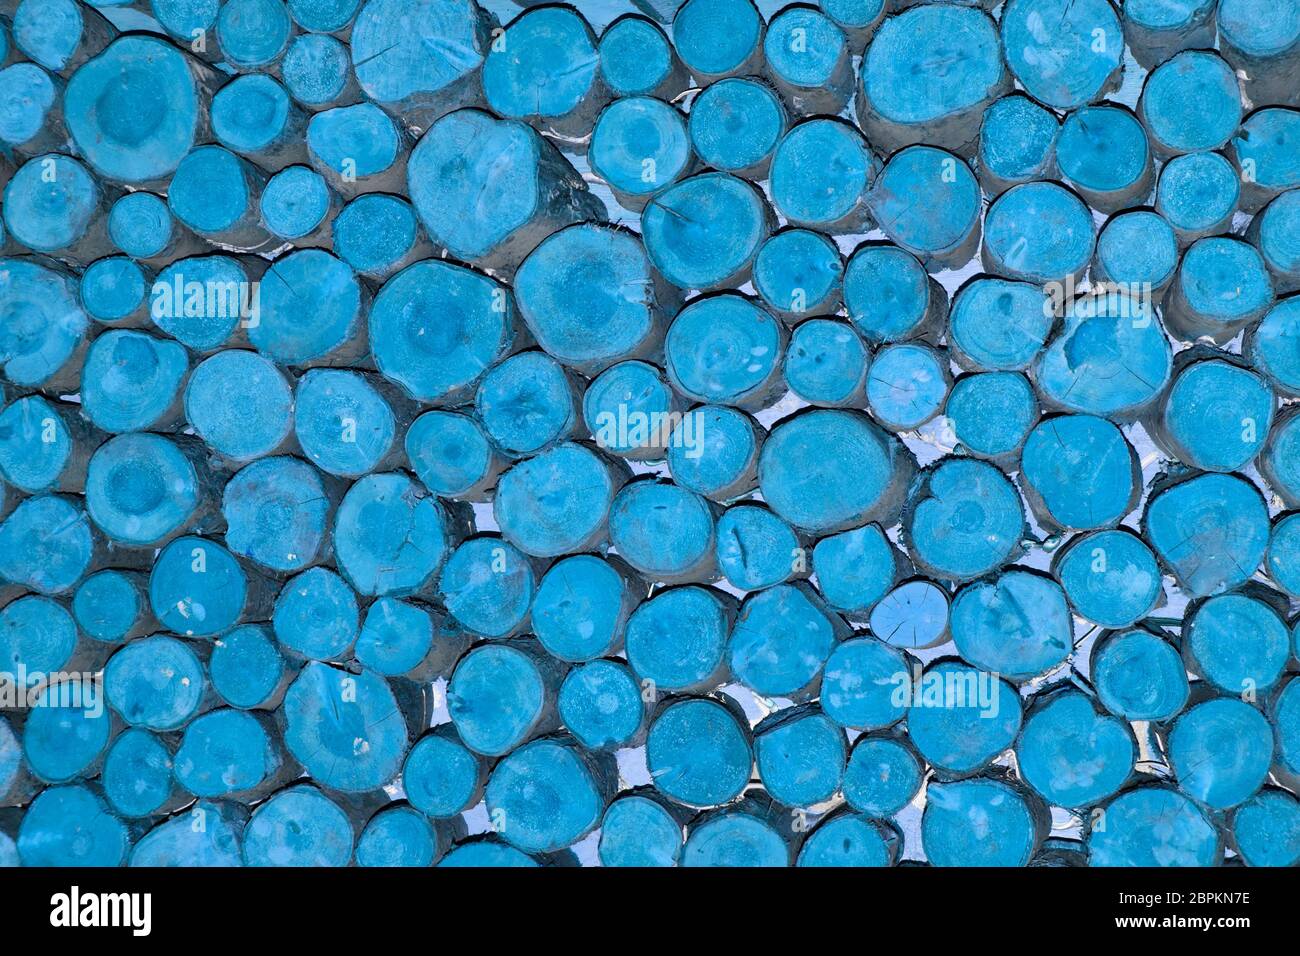 Abstrakt Hintergrund Muster Bild manipuliert blaue Farbe auf Enden der gestapelten kurzen Längen zufälligen Durchmesser rund gesägt Holz Protokolle England Großbritannien angewendet Stockfoto